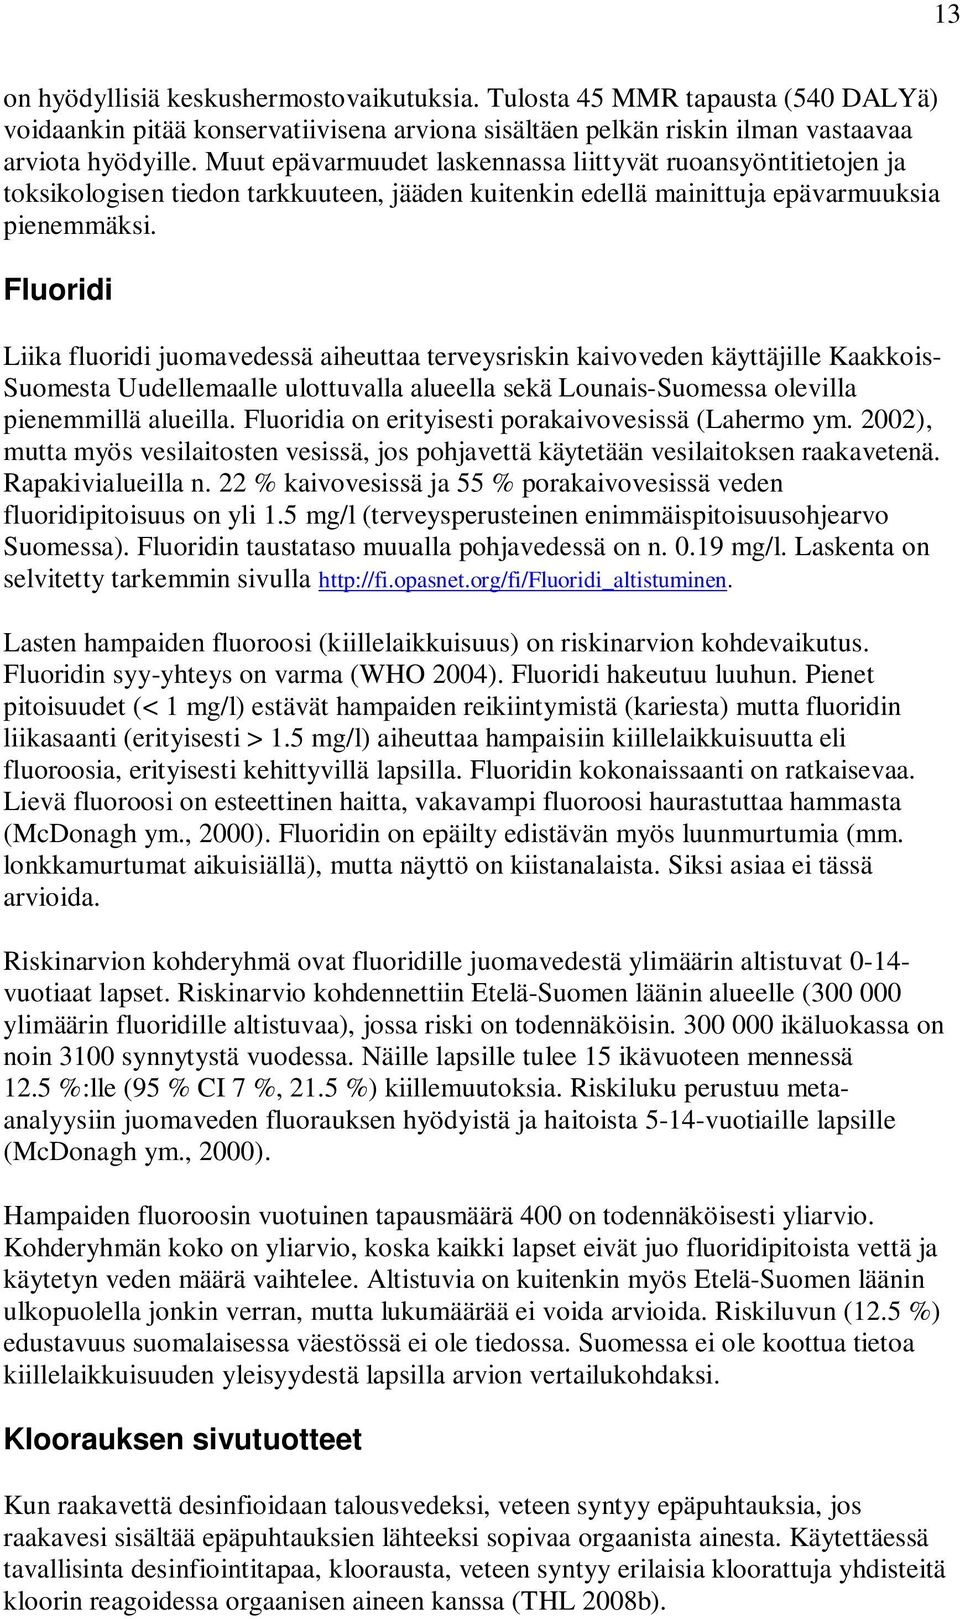 Fluoridi Liika fluoridi juomavedessä aiheuttaa terveysriskin kaivoveden käyttäjille Kaakkois- Suomesta Uudellemaalle ulottuvalla alueella sekä Lounais-Suomessa olevilla pienemmillä alueilla.